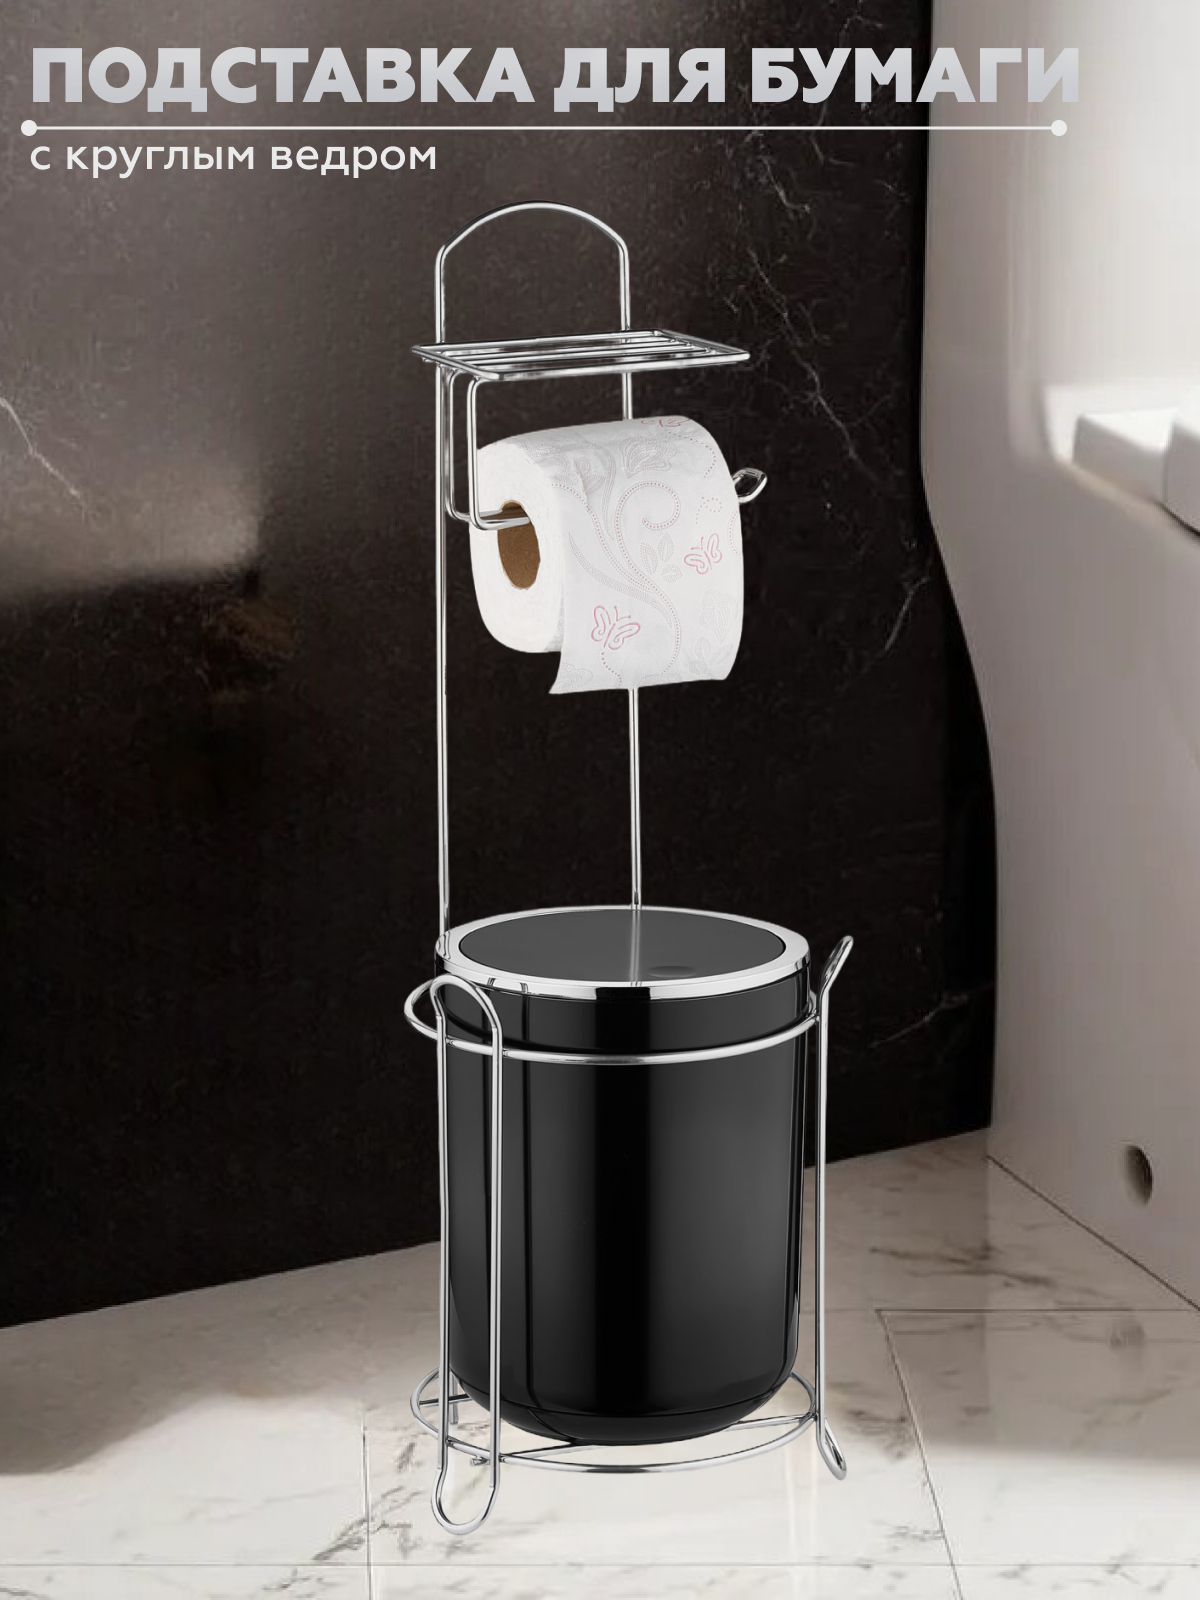 Держатель для туалетной бумаги Vialex с круглым ведром YB255-black